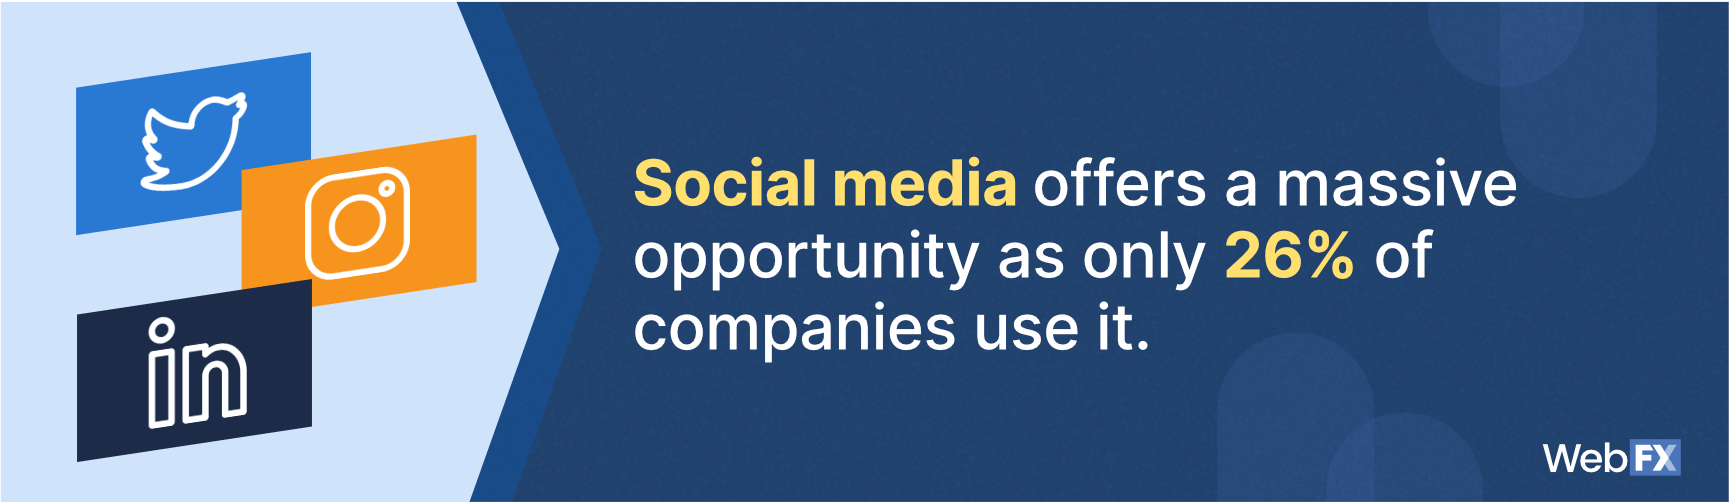 有多少公司使用社交媒体